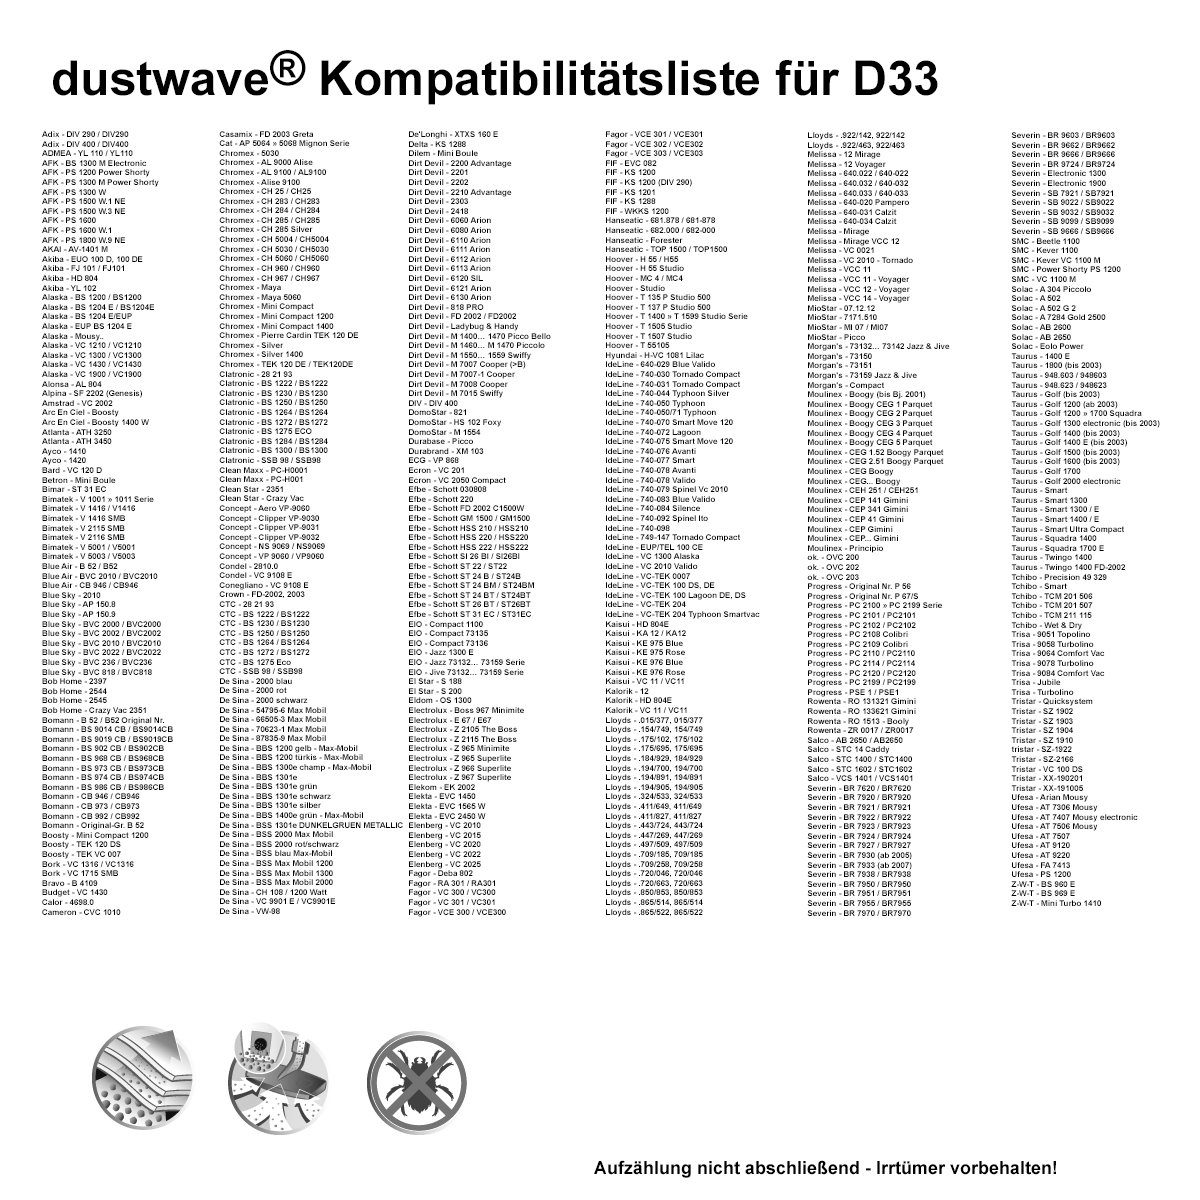 + 290 - DIV290, 15x15cm Adix DIV / St., - für 1 1 (ca. DIV zuschneidbar) Dustwave DIV290 290 Test-Set, Test-Set, Hepa-Filter Staubsaugerbeutel / Adix Standard Staubsaugerbeutel passend 1